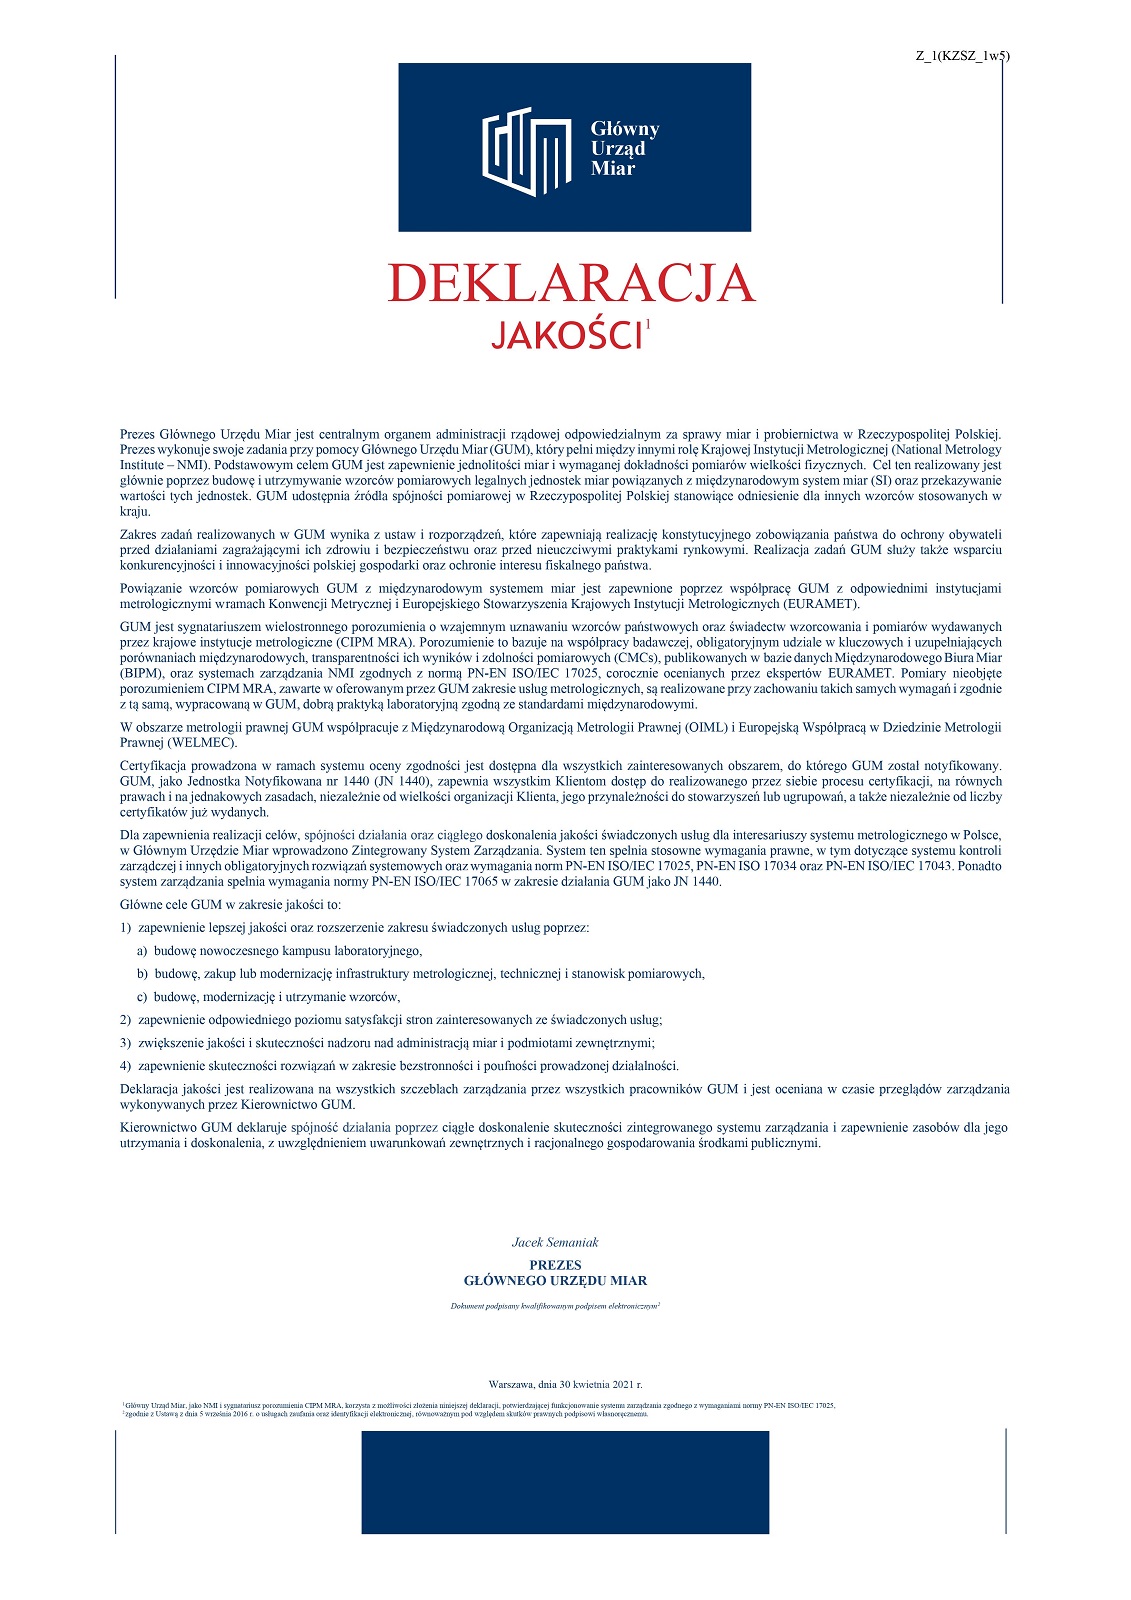 Deklaracja jakości - podpisany przez Prezesa GUM dokument. Pod zdjęcie podlinkowany jest pdf z dostępną wersją.